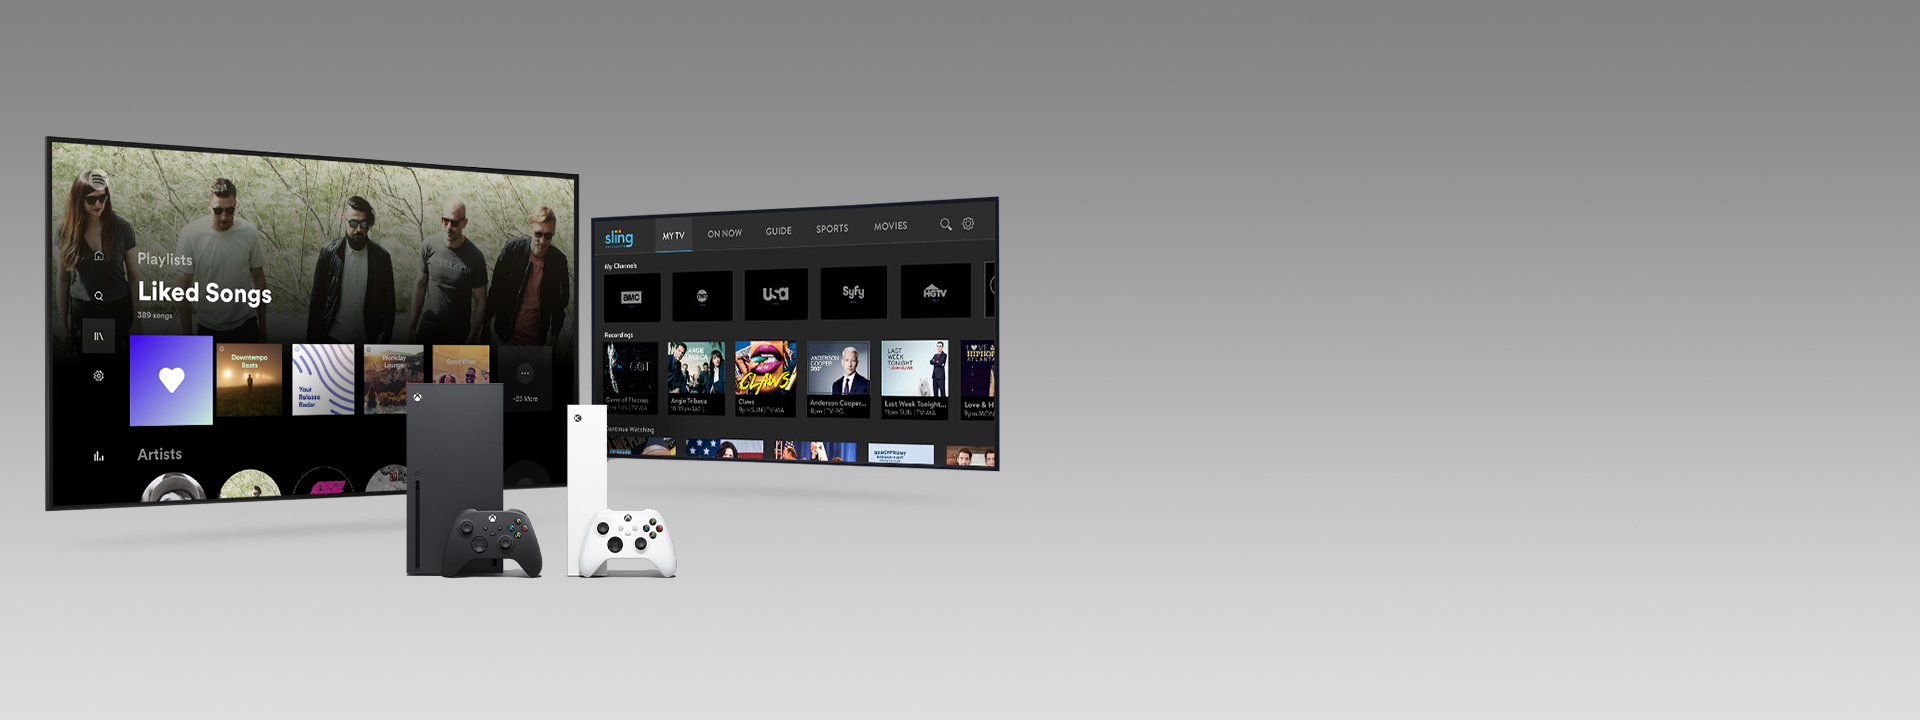 一個 Xbox Series X 和 Series S 以及多個控制器位於兩個顯示 App 使用者介面的電視螢幕前方。